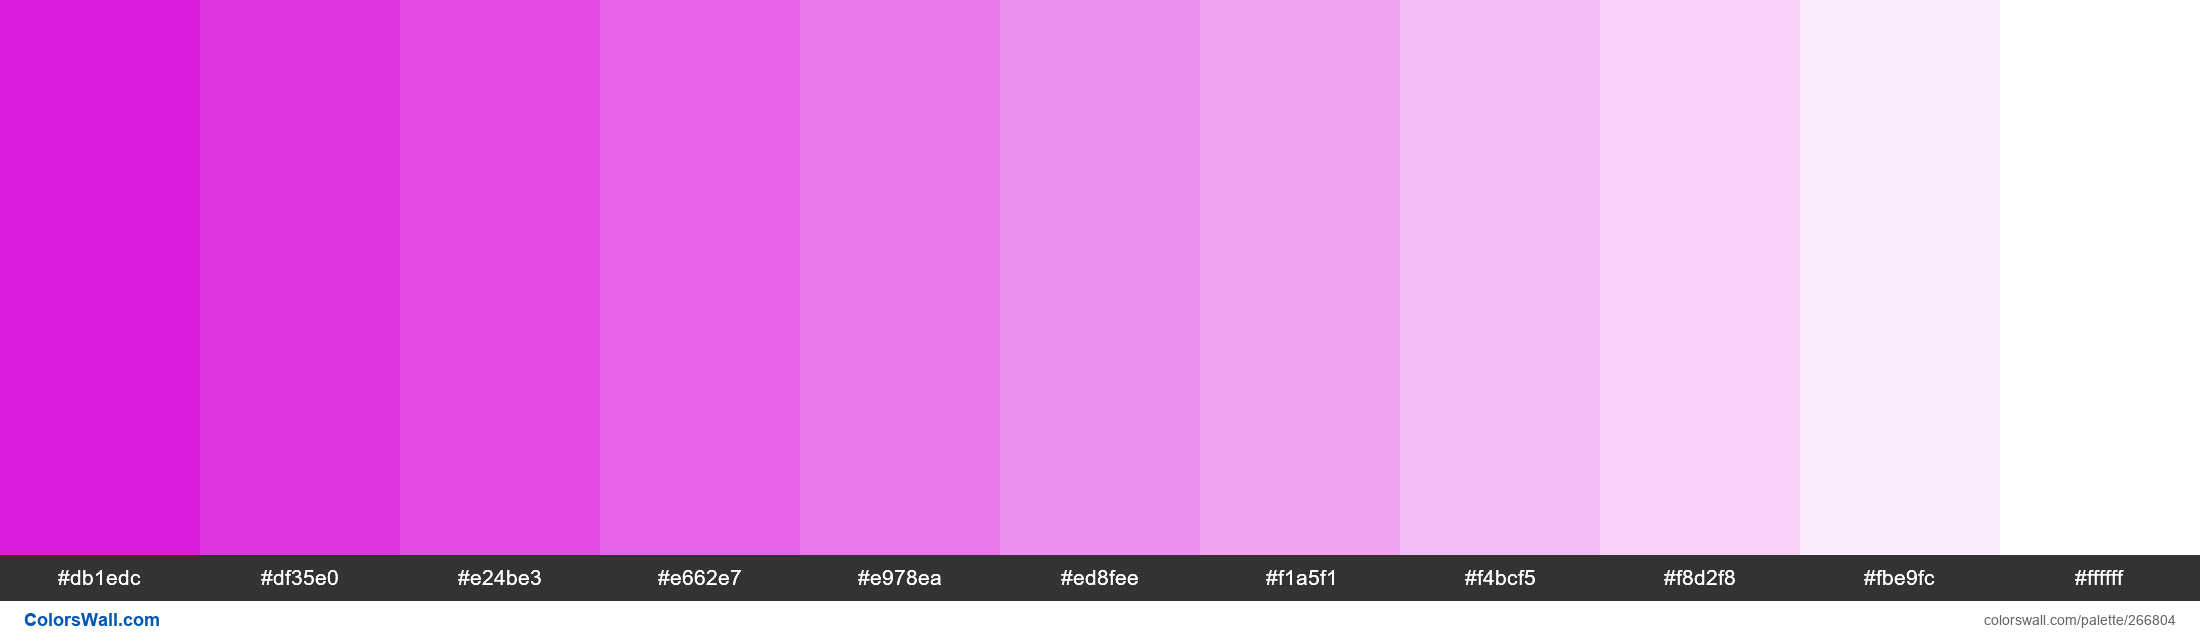 Vivid Boysenberry colors palette - ColorsWall